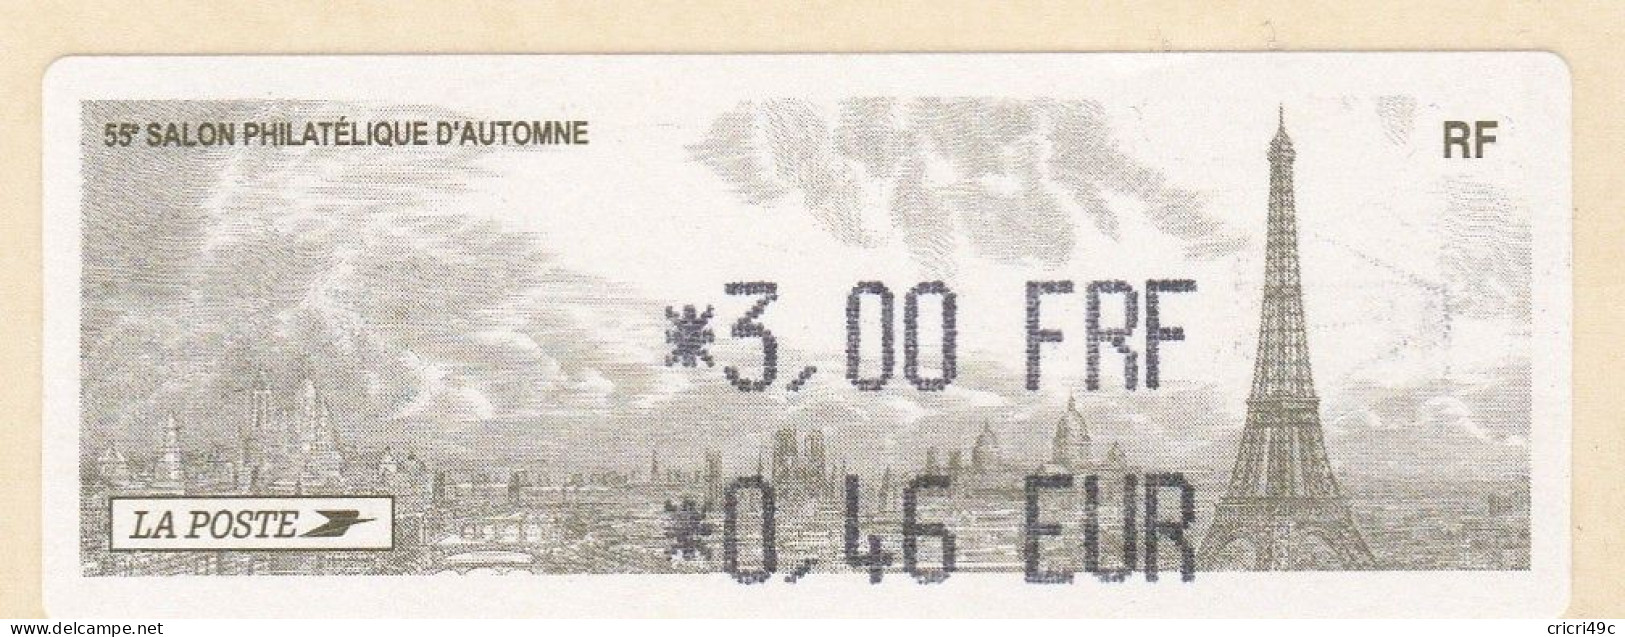 1 ATM LISA. 55è SALON PHILATHELIQUE D"AUTOMNE PARIS  2001. 3.00F  Neufs** - 2010-... Illustrated Franking Labels